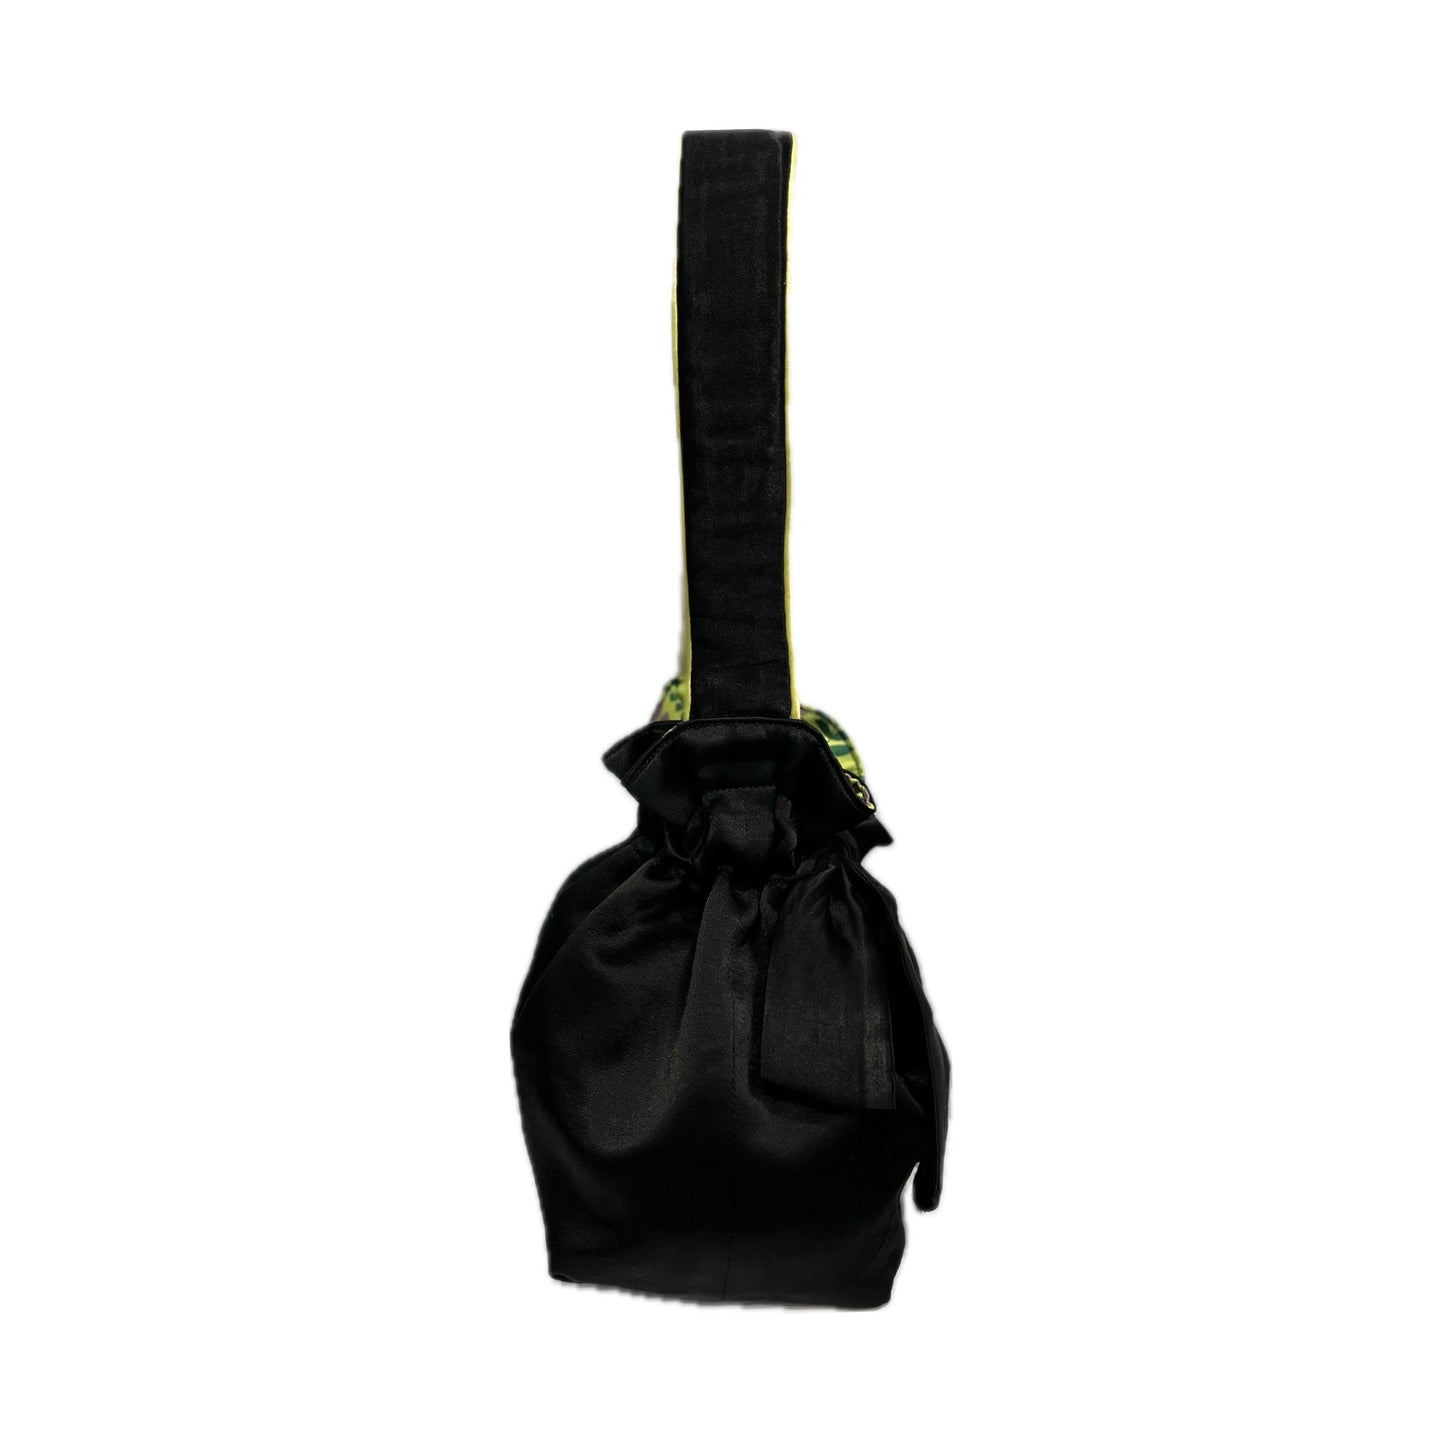 Black Satin & Flora Lime Mini Reversible Bucket Bag